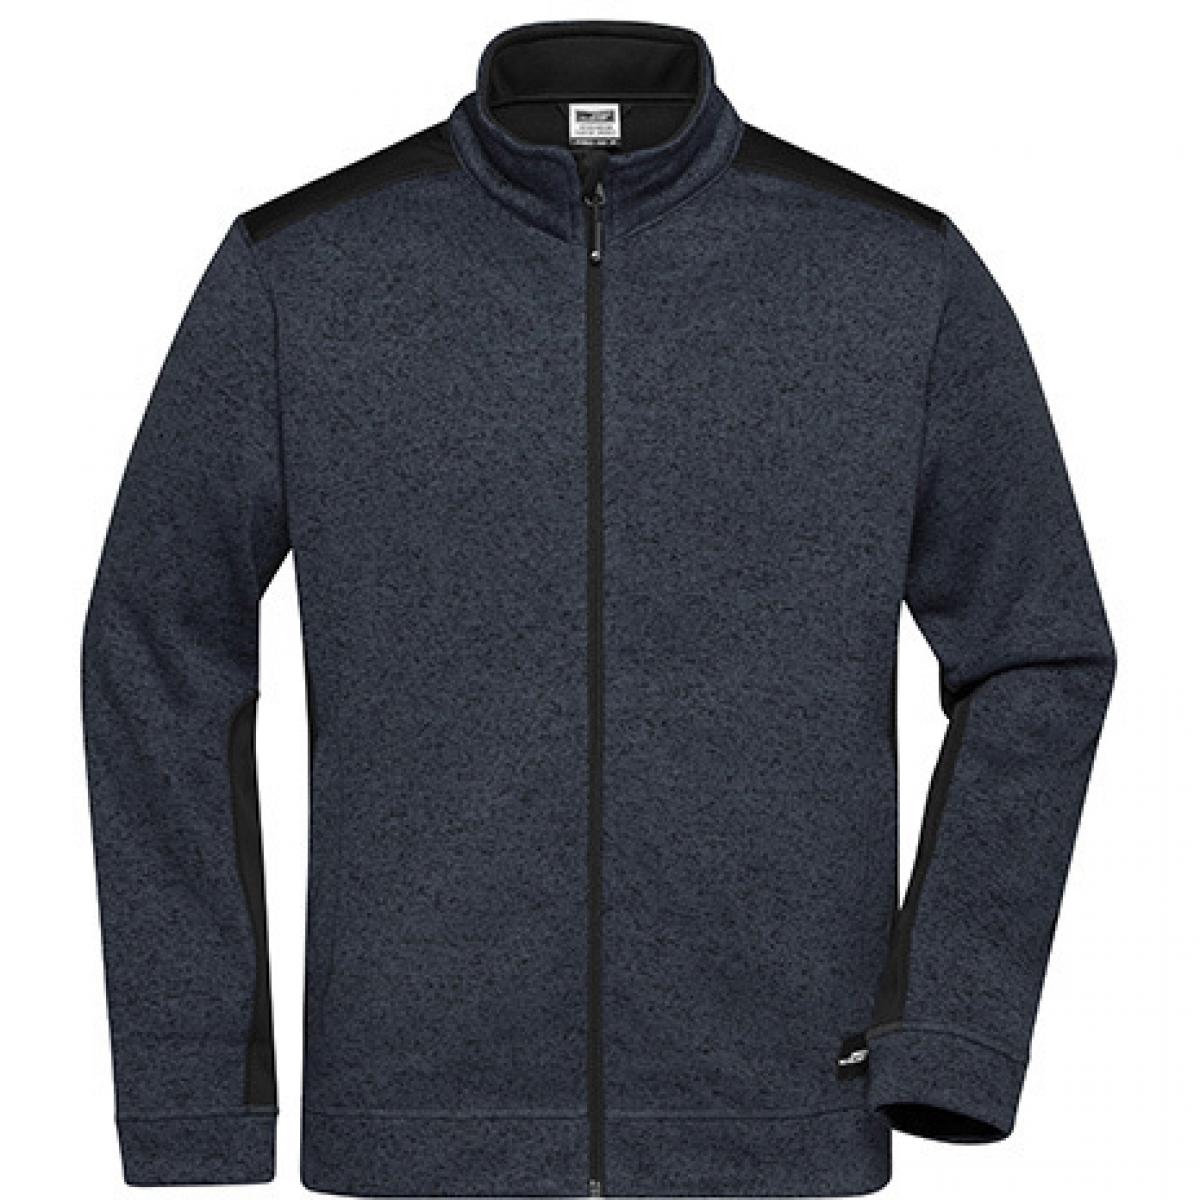 Hersteller: James+Nicholson Herstellernummer: JN862 Artikelbezeichnung: Herren Jacke, Men‘s Knitted Workwear Fleece Jacket -STRONG- Farbe: Carbon Melange/Black